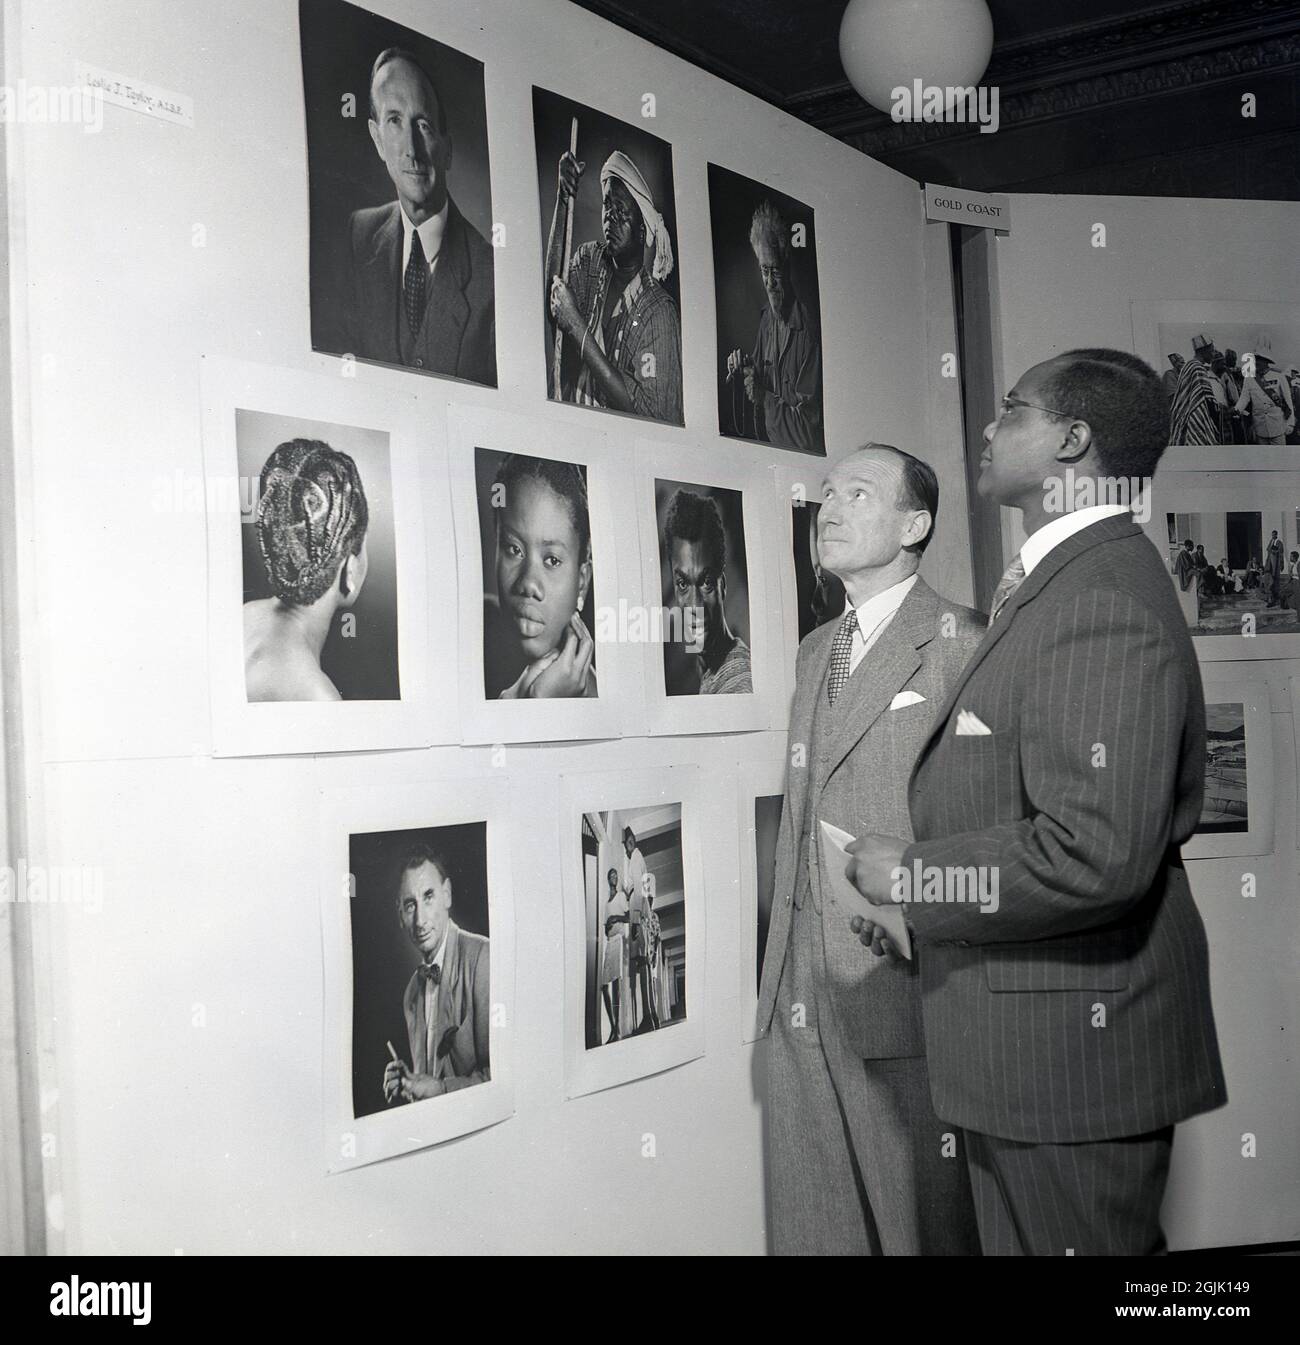 Années 1950, historique, lors d'une exposition de photos, deux hommes en costume debout regardant des portraits d'Afrique et de la Gold Coast, pris par le photographe Leslle J. Taylor, AIBP, Londres, Angleterre, Royaume-Uni. Banque D'Images